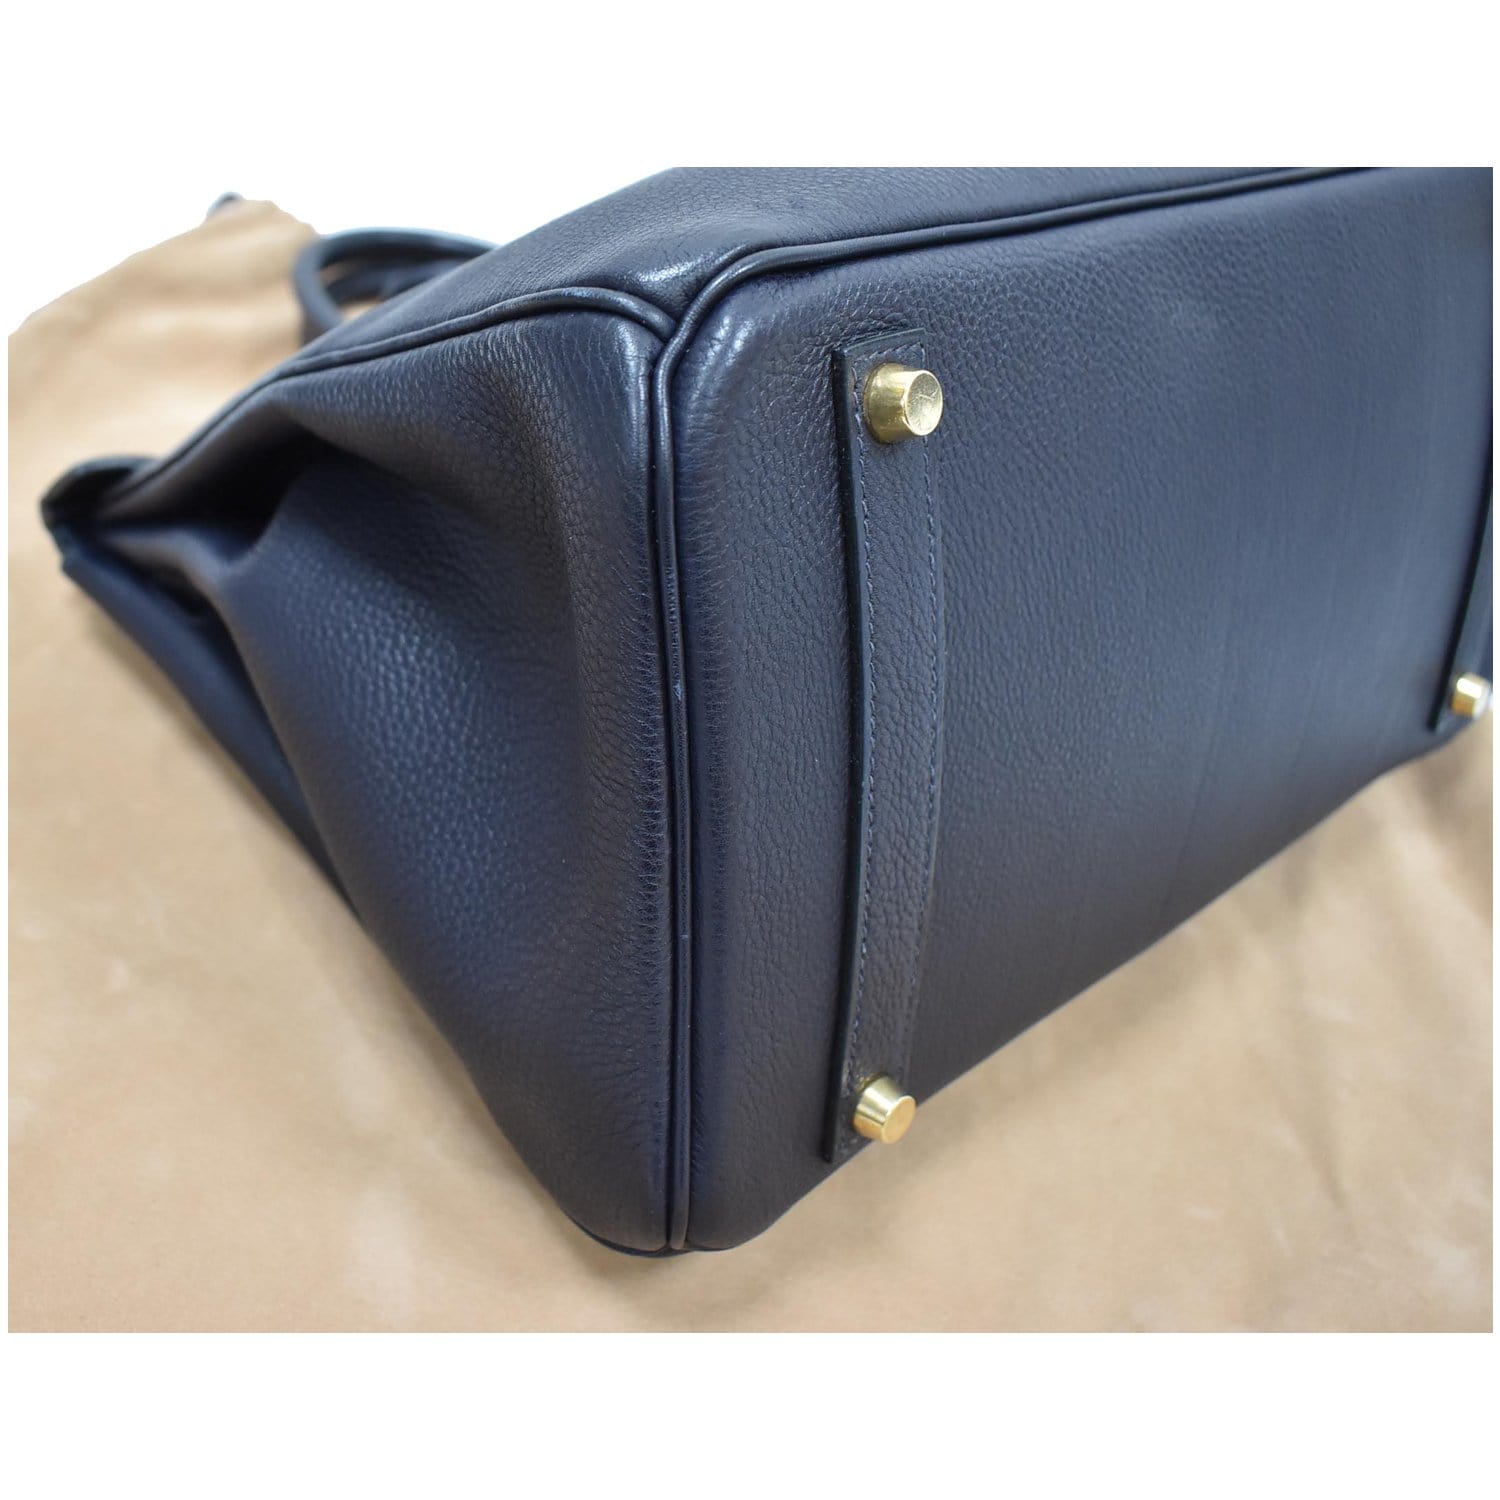 Preloved Hermes Birkin 35 Handbag Black Togo with Gold Hardware